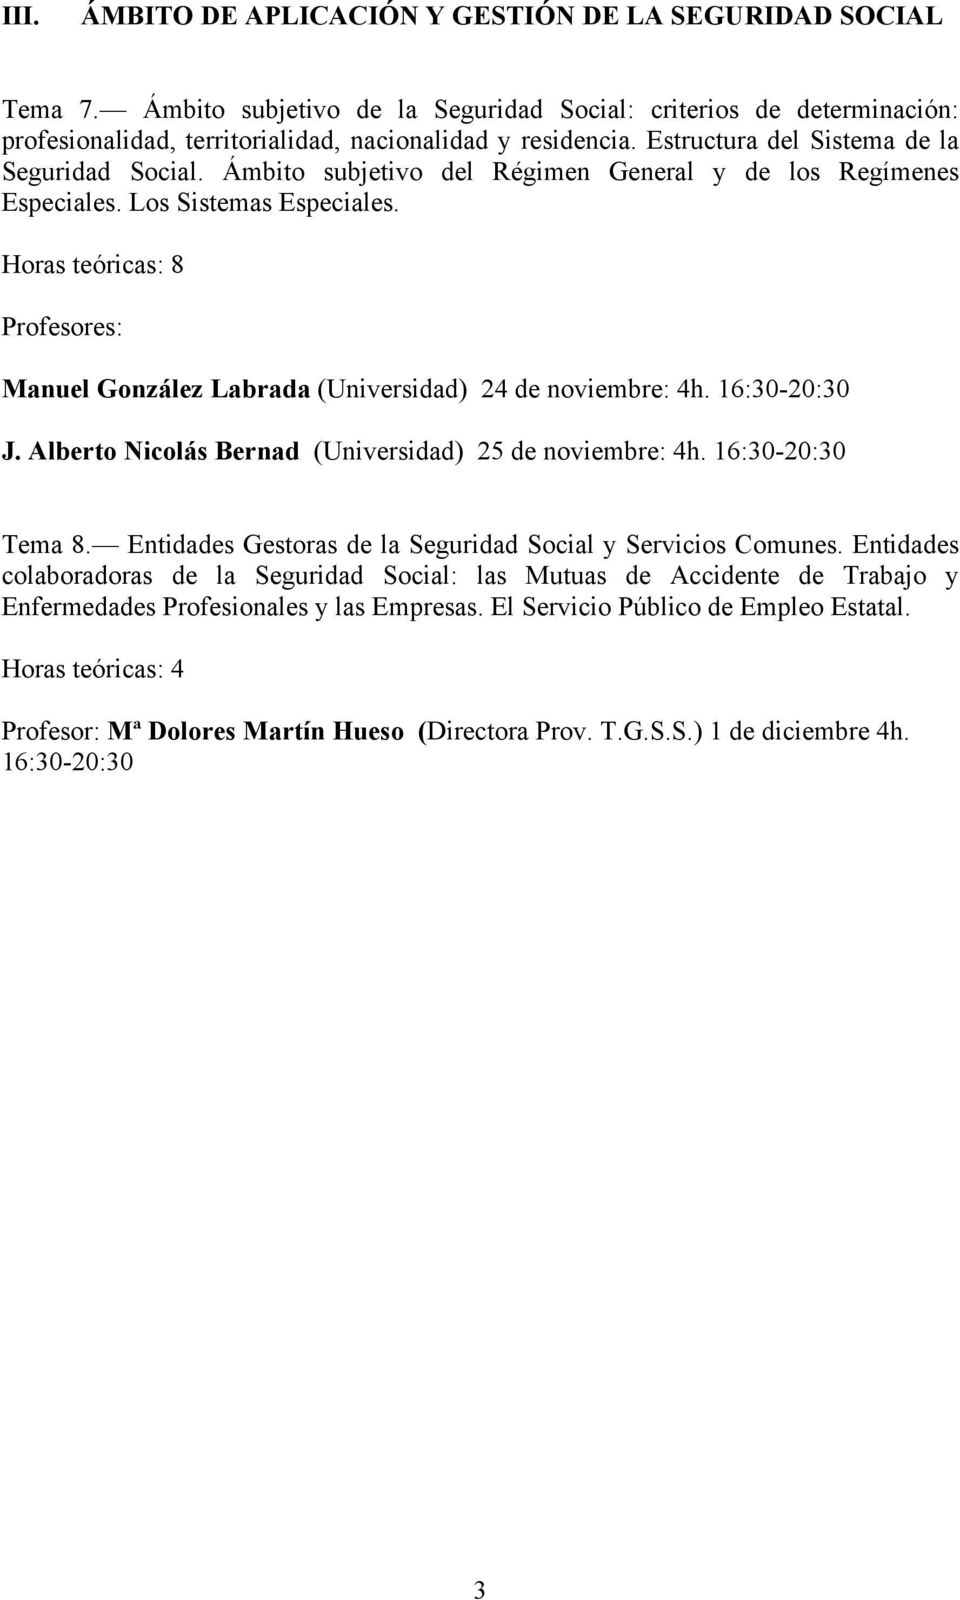 Profesores: Manuel González Labrada (Universidad) 24 de noviembre: 4h. 16:30-20:30 J. Alberto Nicolás Bernad (Universidad) 25 de noviembre: 4h. 16:30-20:30 Tema 8.